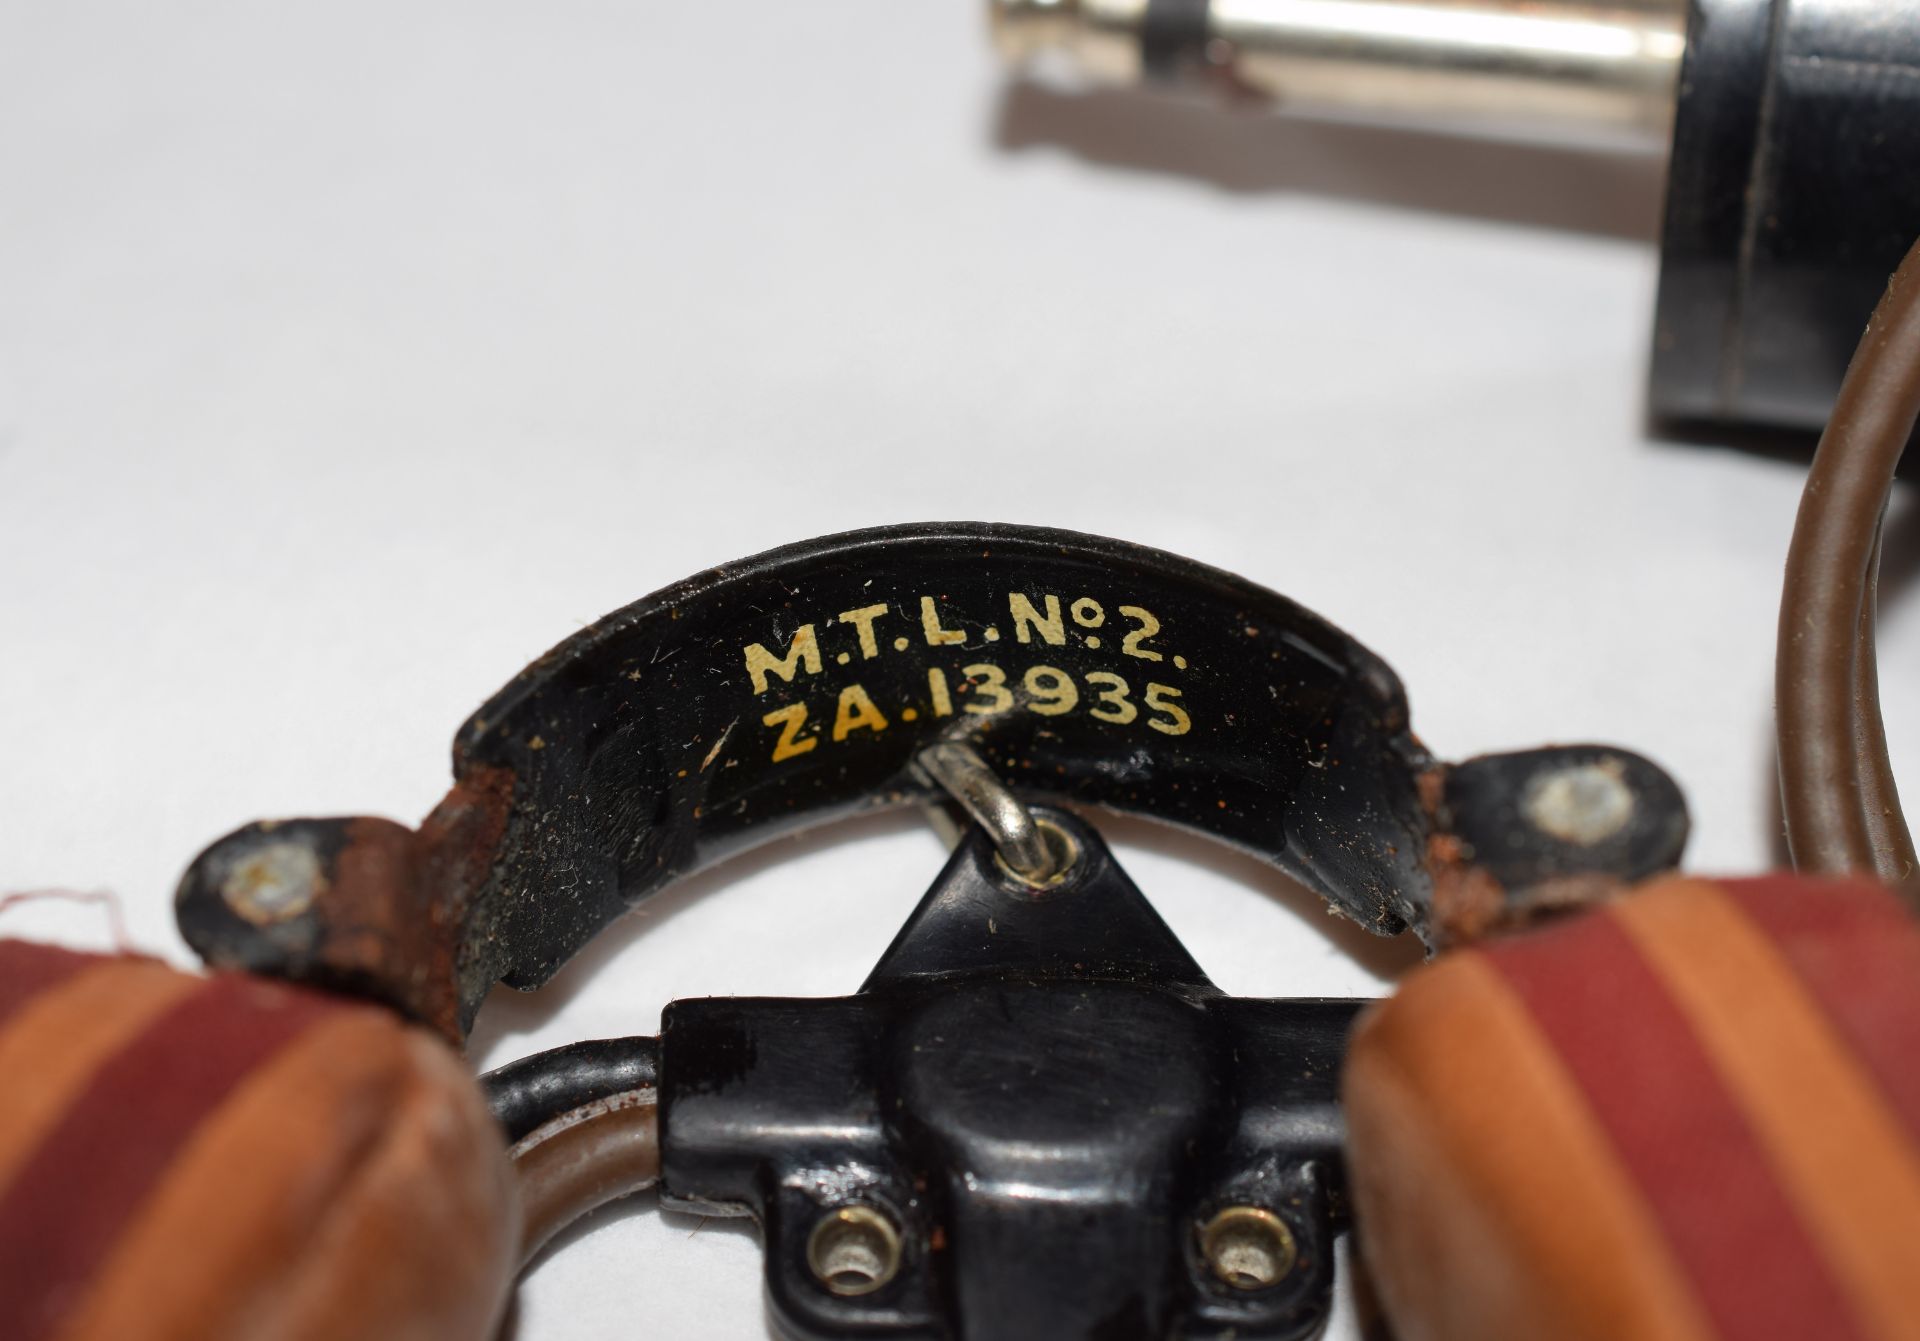 WW2 Spitfire Pilot's Gun Camera And Memorabilia (Multiple Images 1 of 31) - Bild 21 aus 31